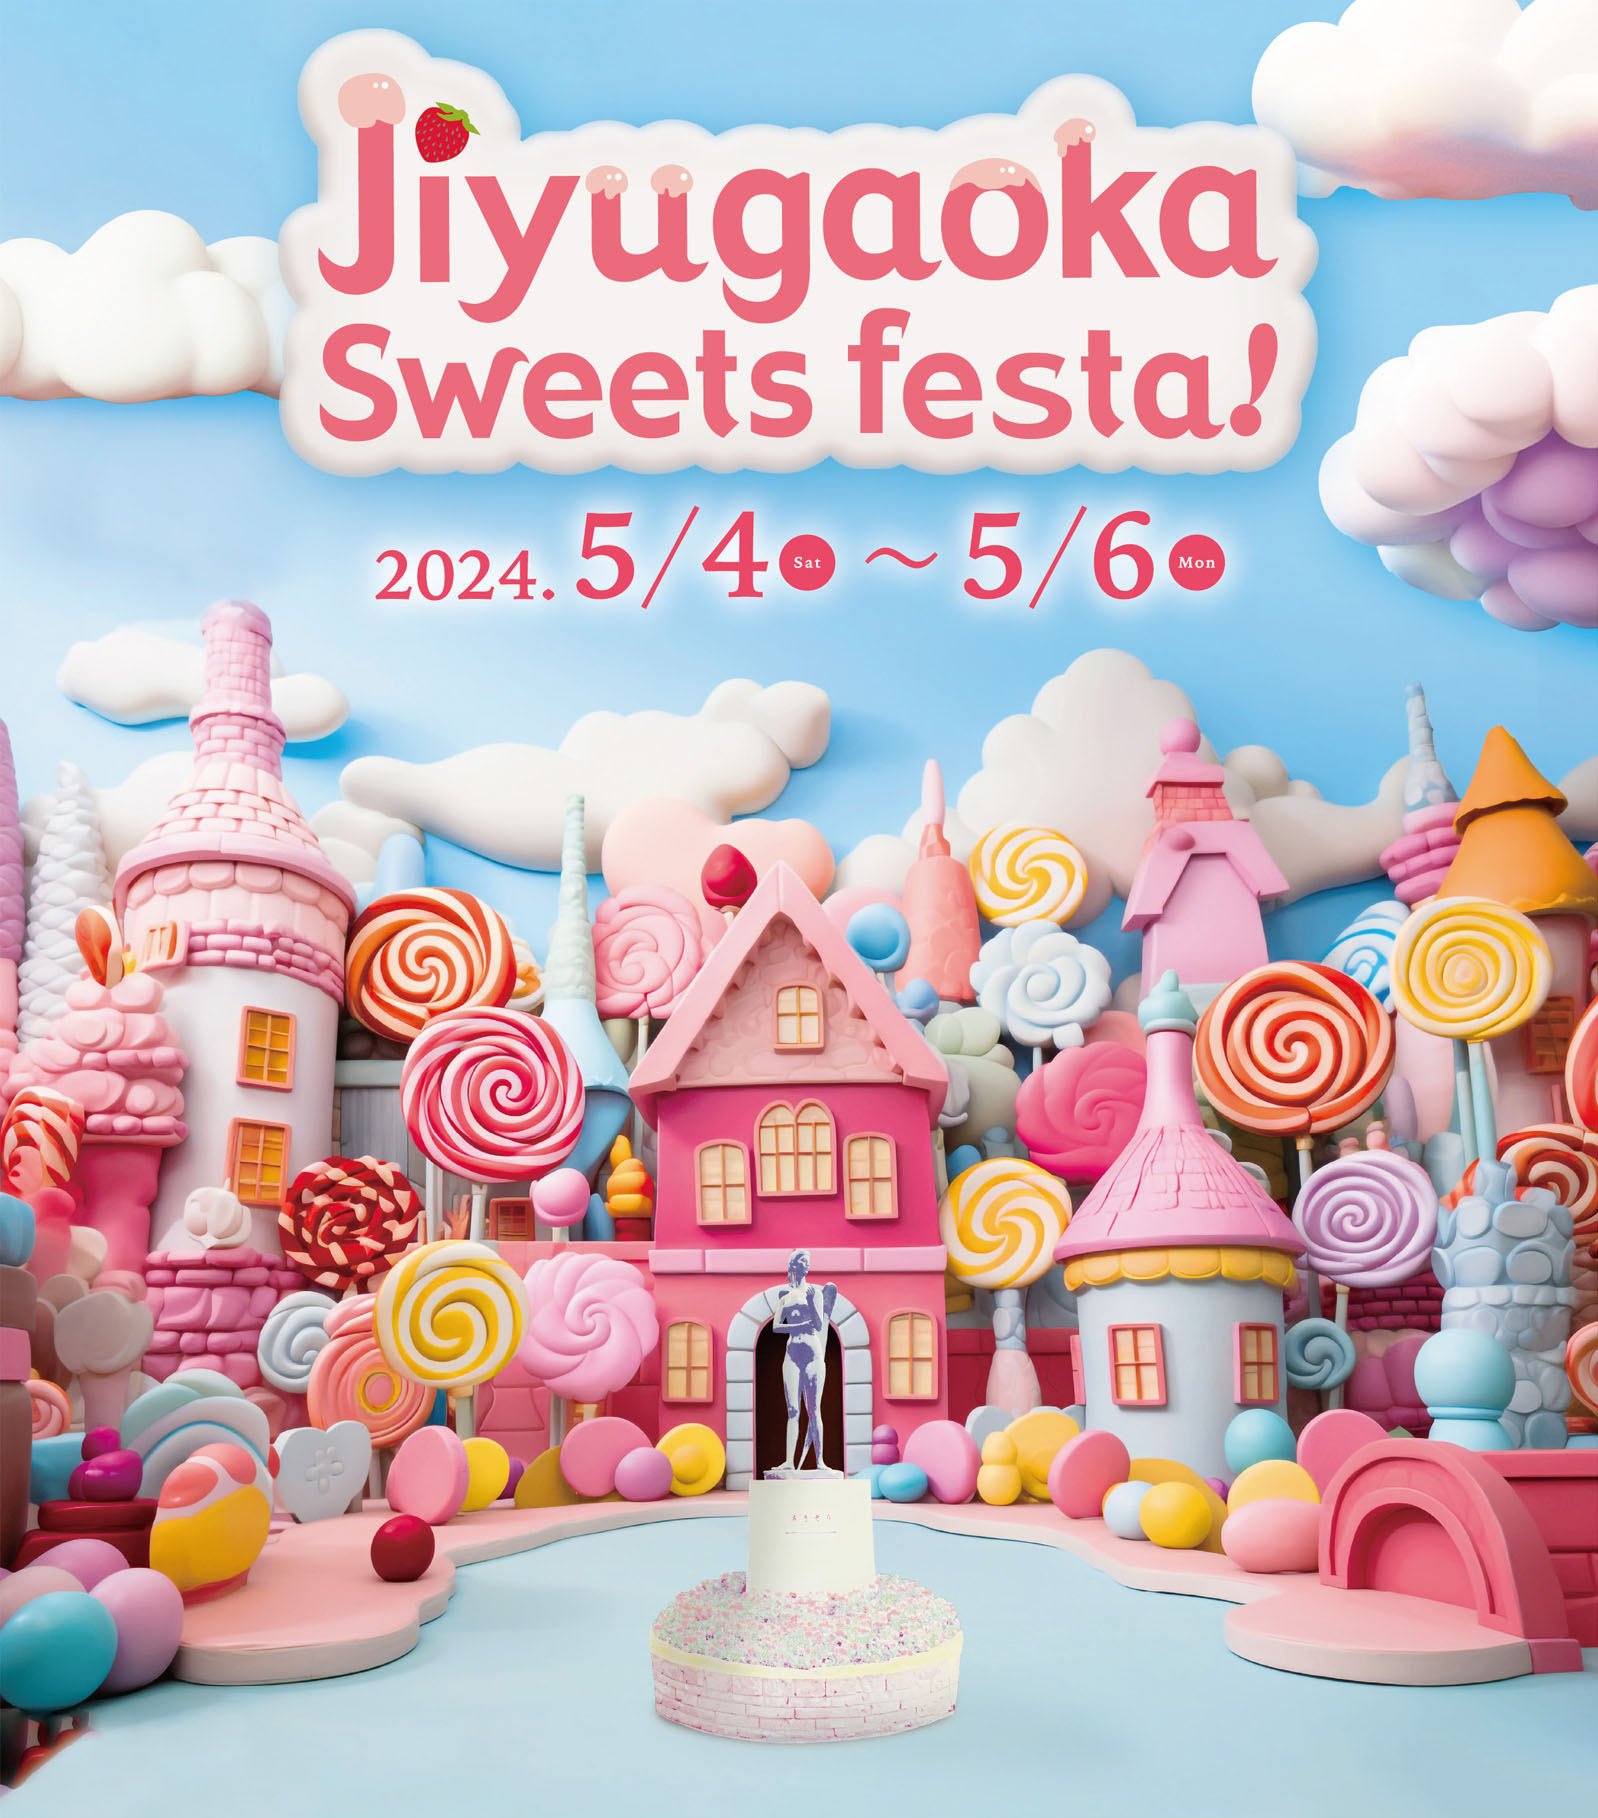 Jiyugaoka Sweets festa! 2024.5/4(SAT)~5/6(MON)